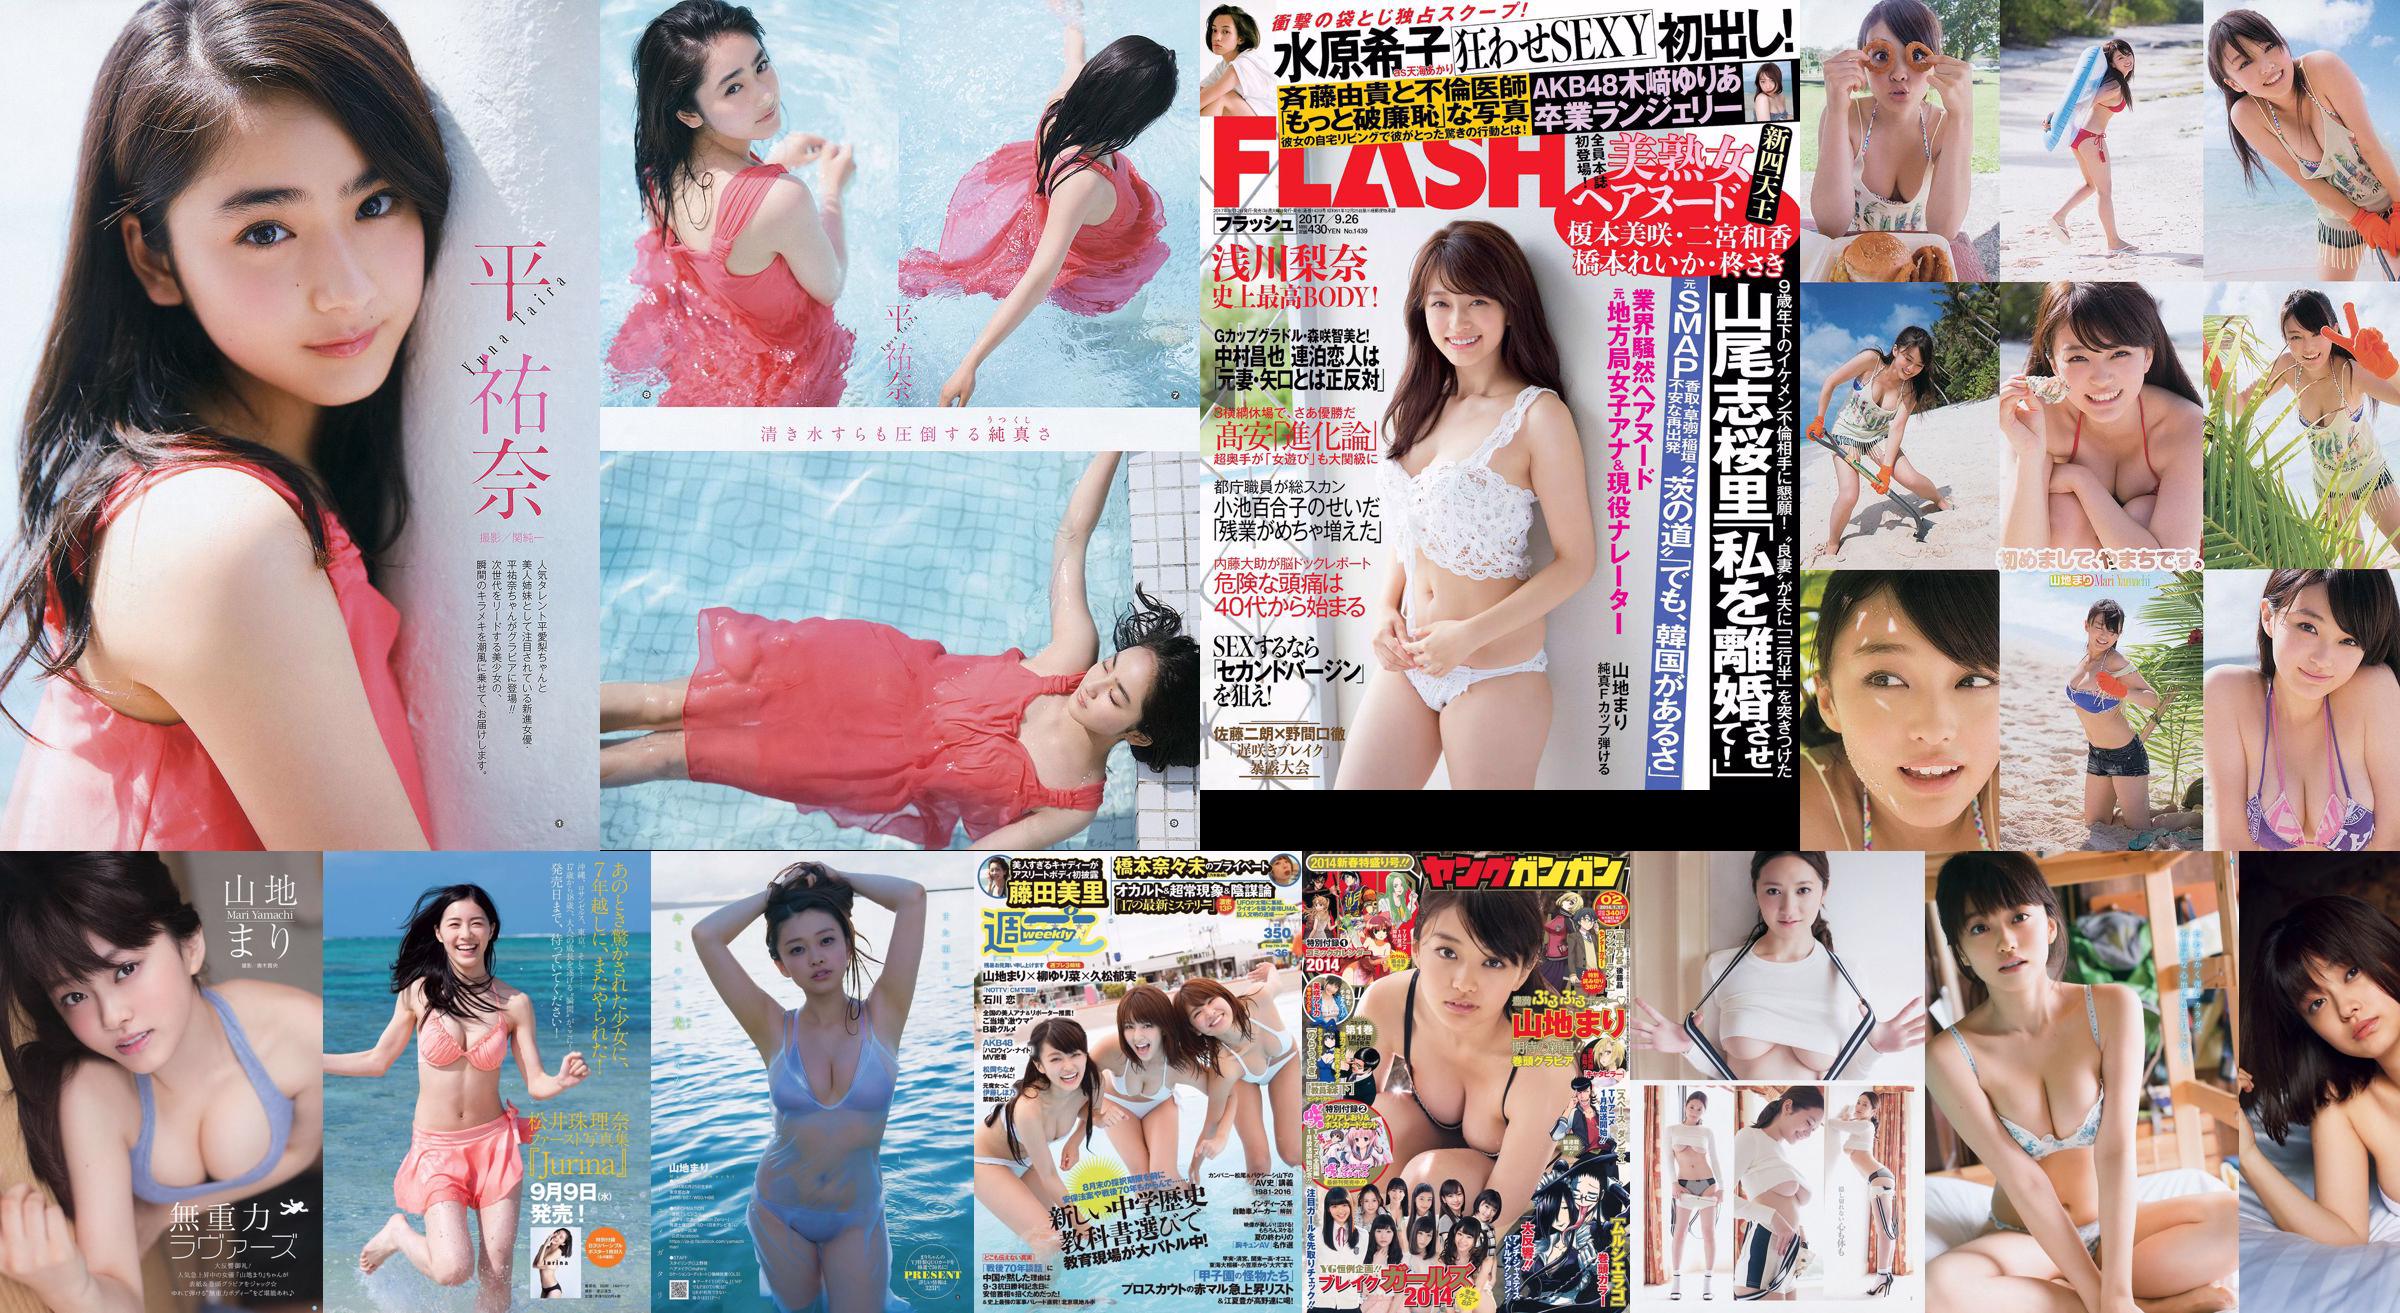 Mari Yamachi Yume Hazuki [Weekly Young Jump] Magazine photo n ° 34 2014 No.836737 Page 1